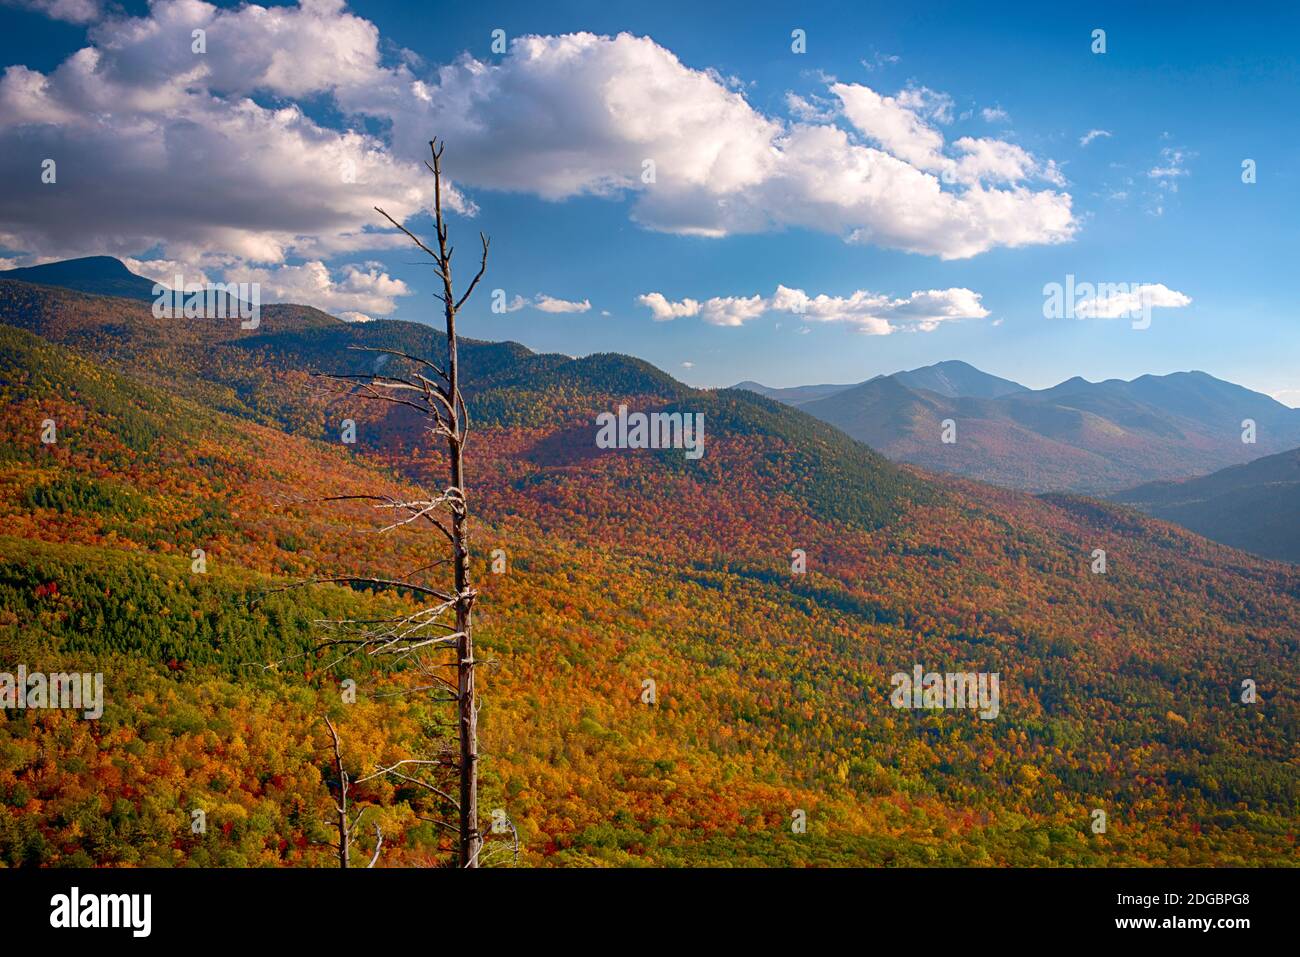 Los árboles de otoño en la montaña, Baxter Mountain, Adirondack Mountains State Park, Nueva York State, Estados Unidos Foto de stock